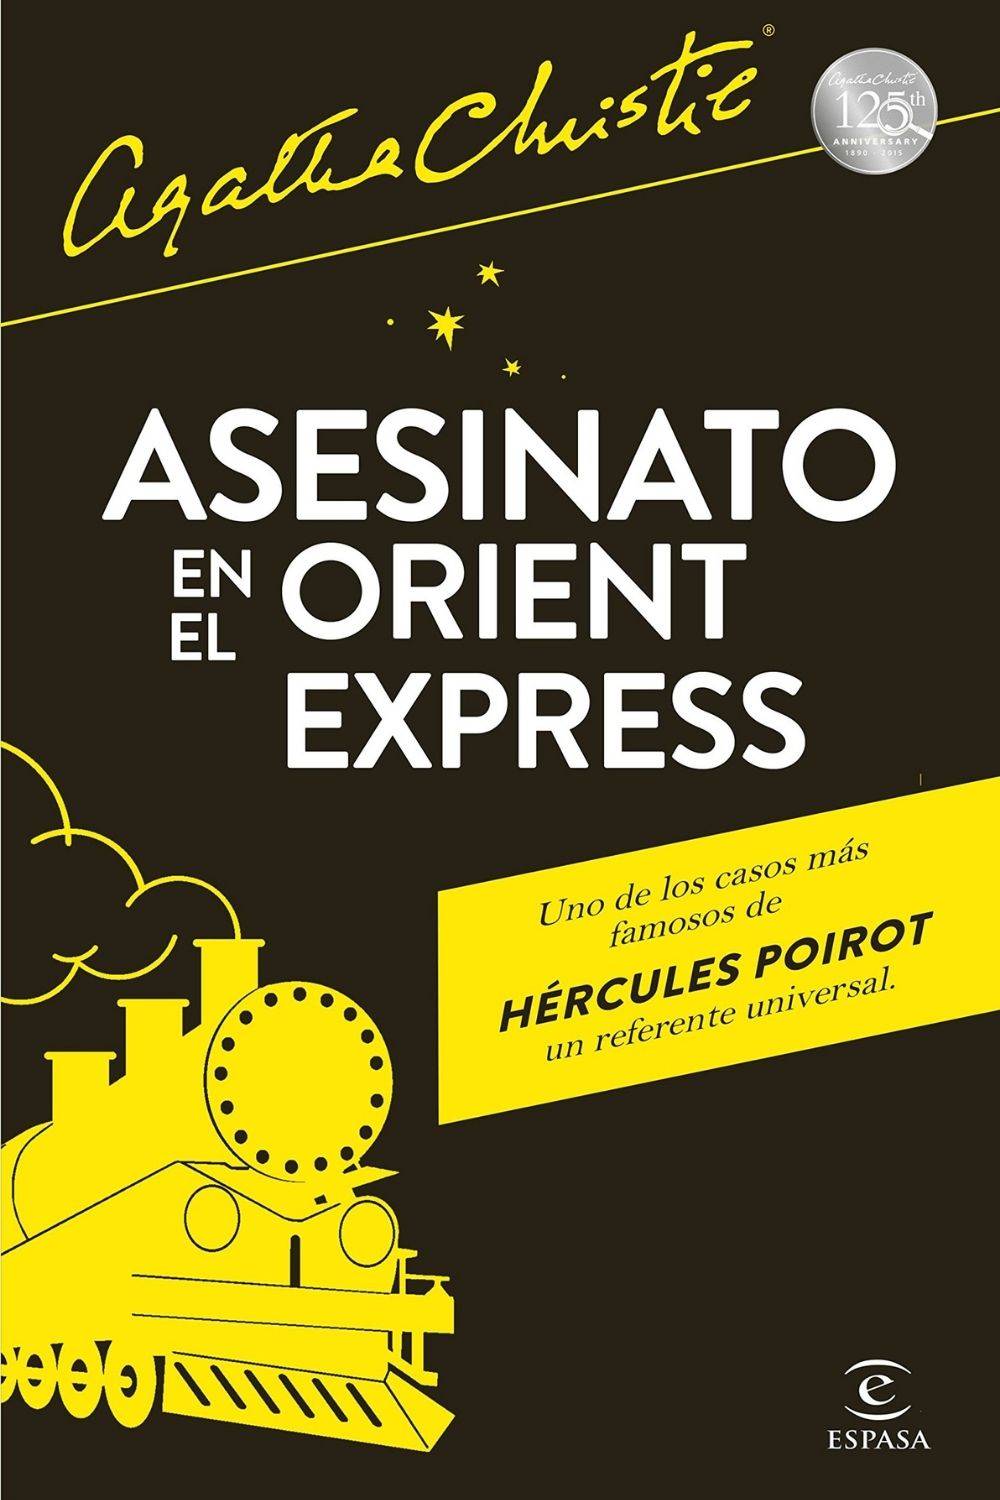 ‘Asesinato en el Orient Express’ de Agatha Christie